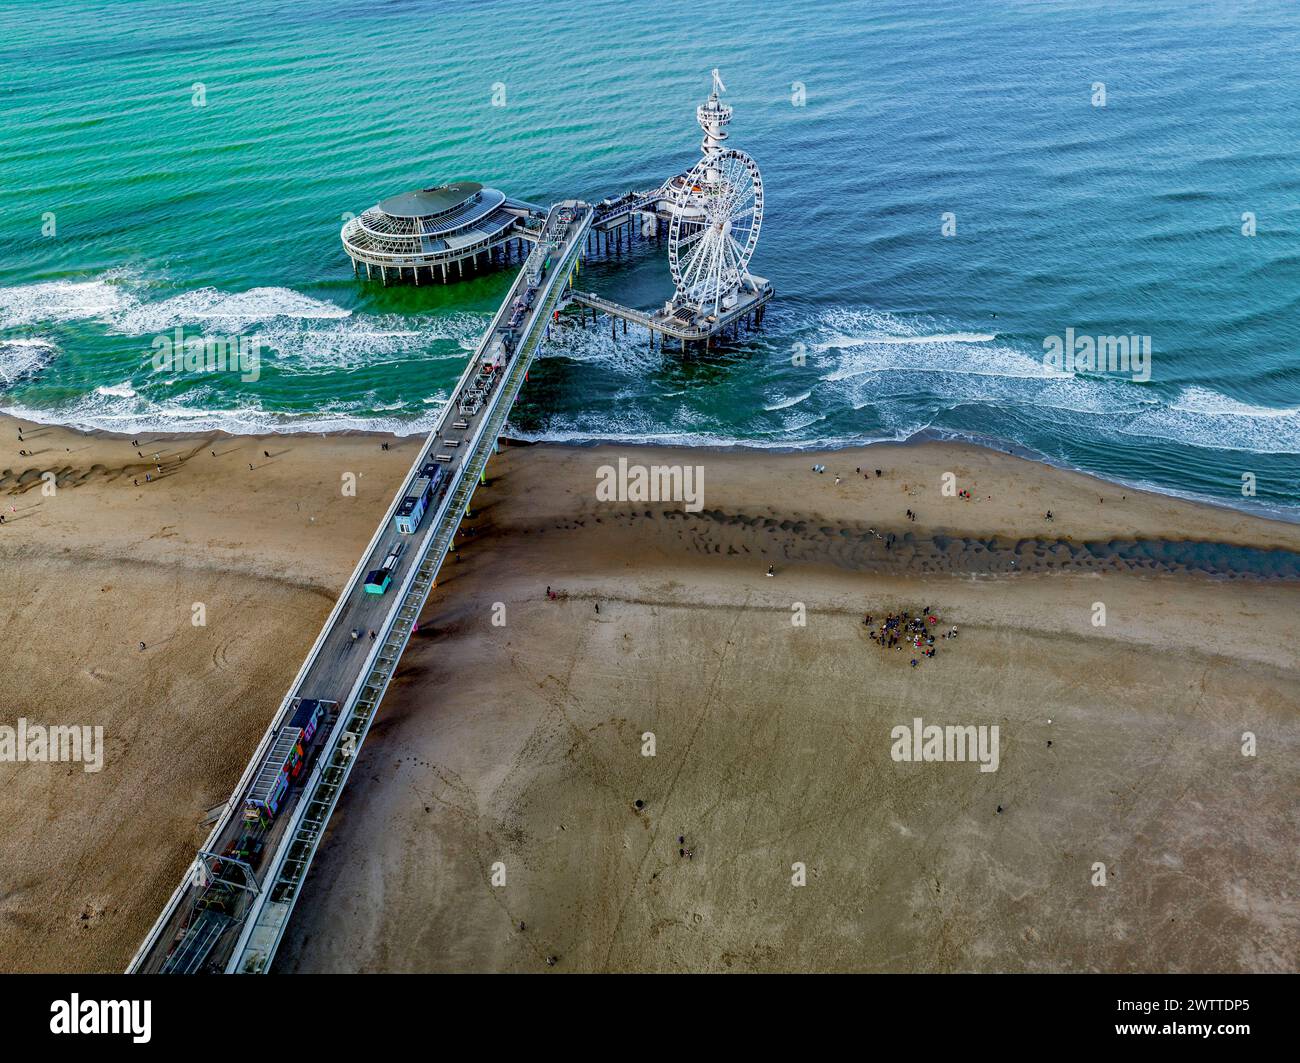 Vue aérienne d'une jetée animée s'étendant dans la mer avec des attractions et des amateurs de plage ci-dessous. Banque D'Images